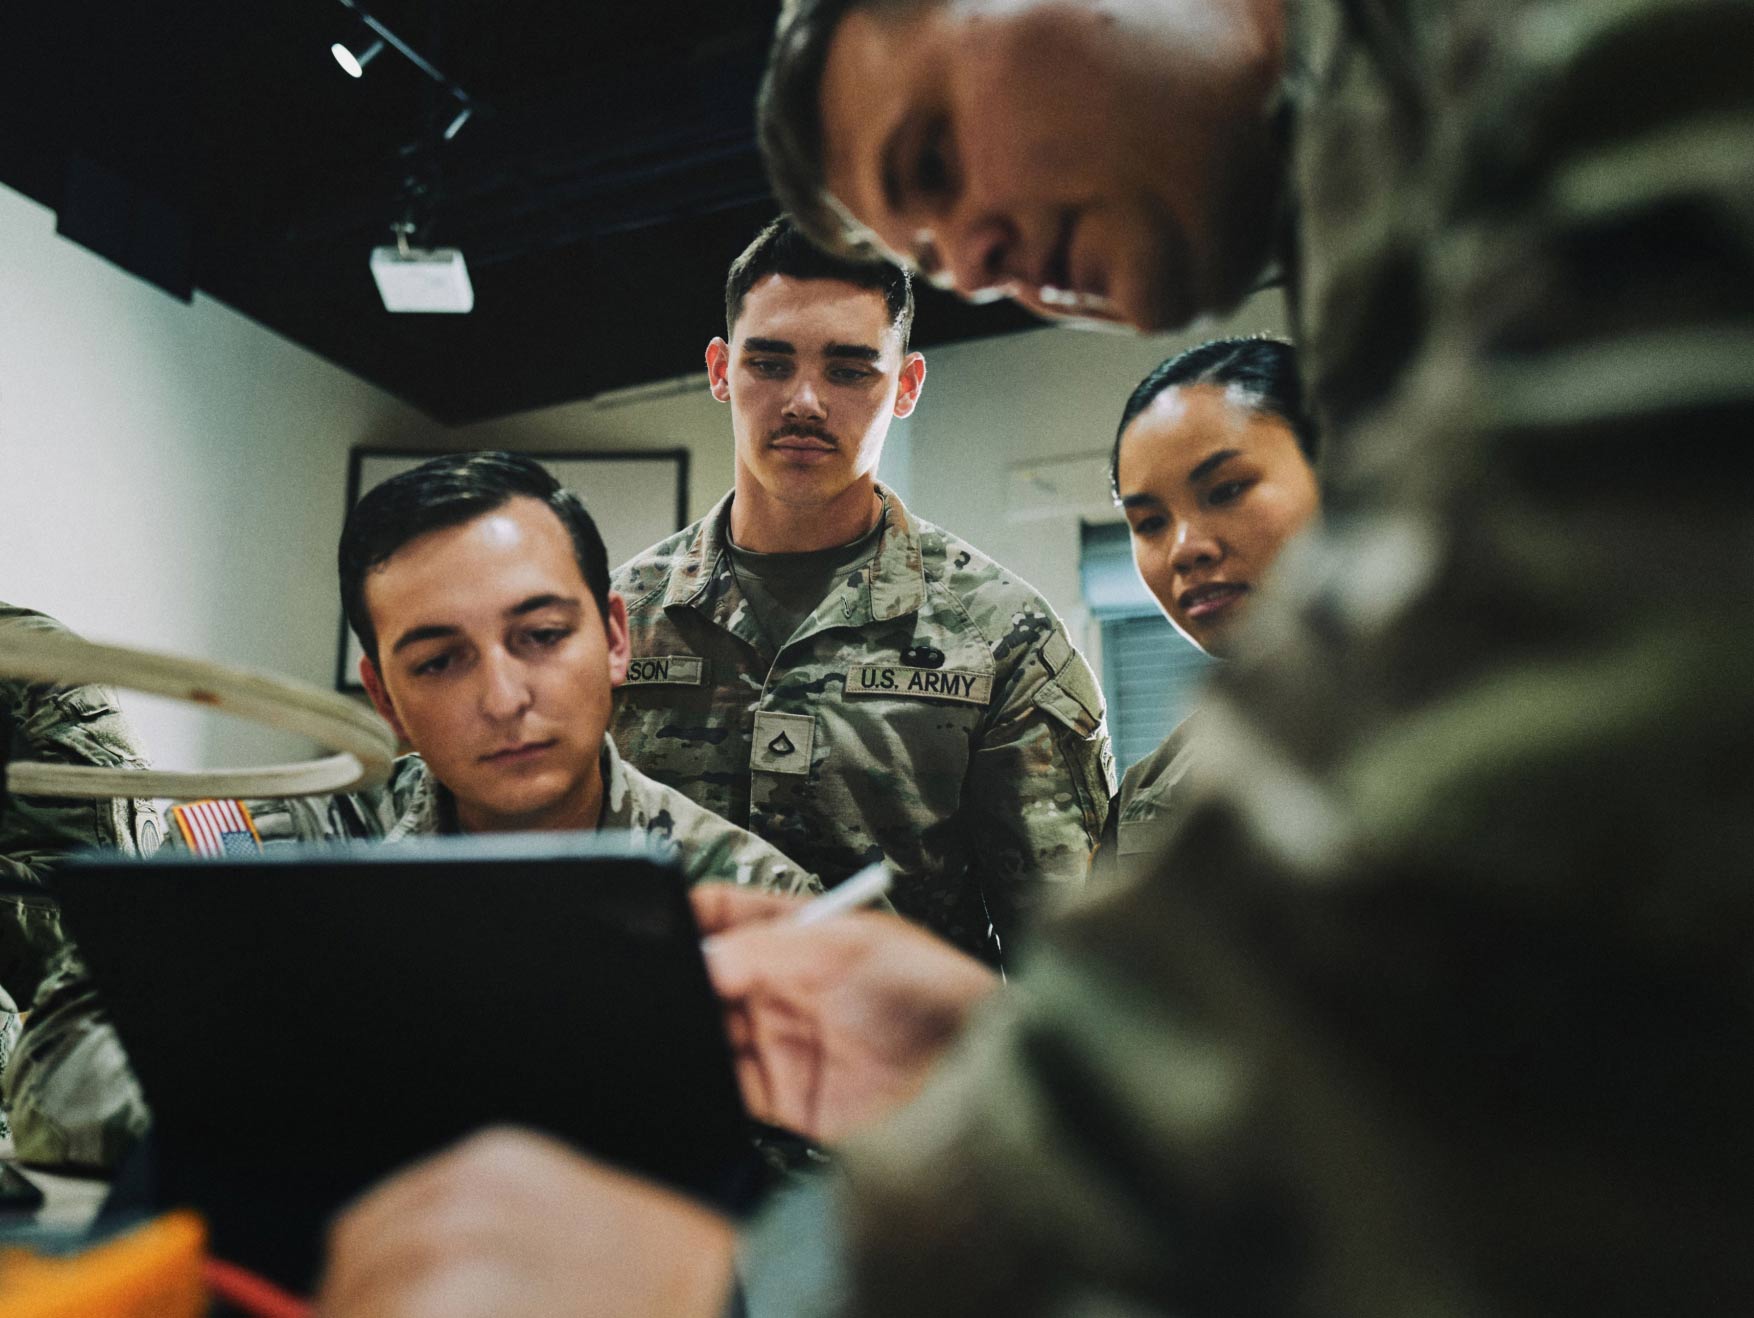 Un grupo de Soldados en uniforme de combate mirando una tablet